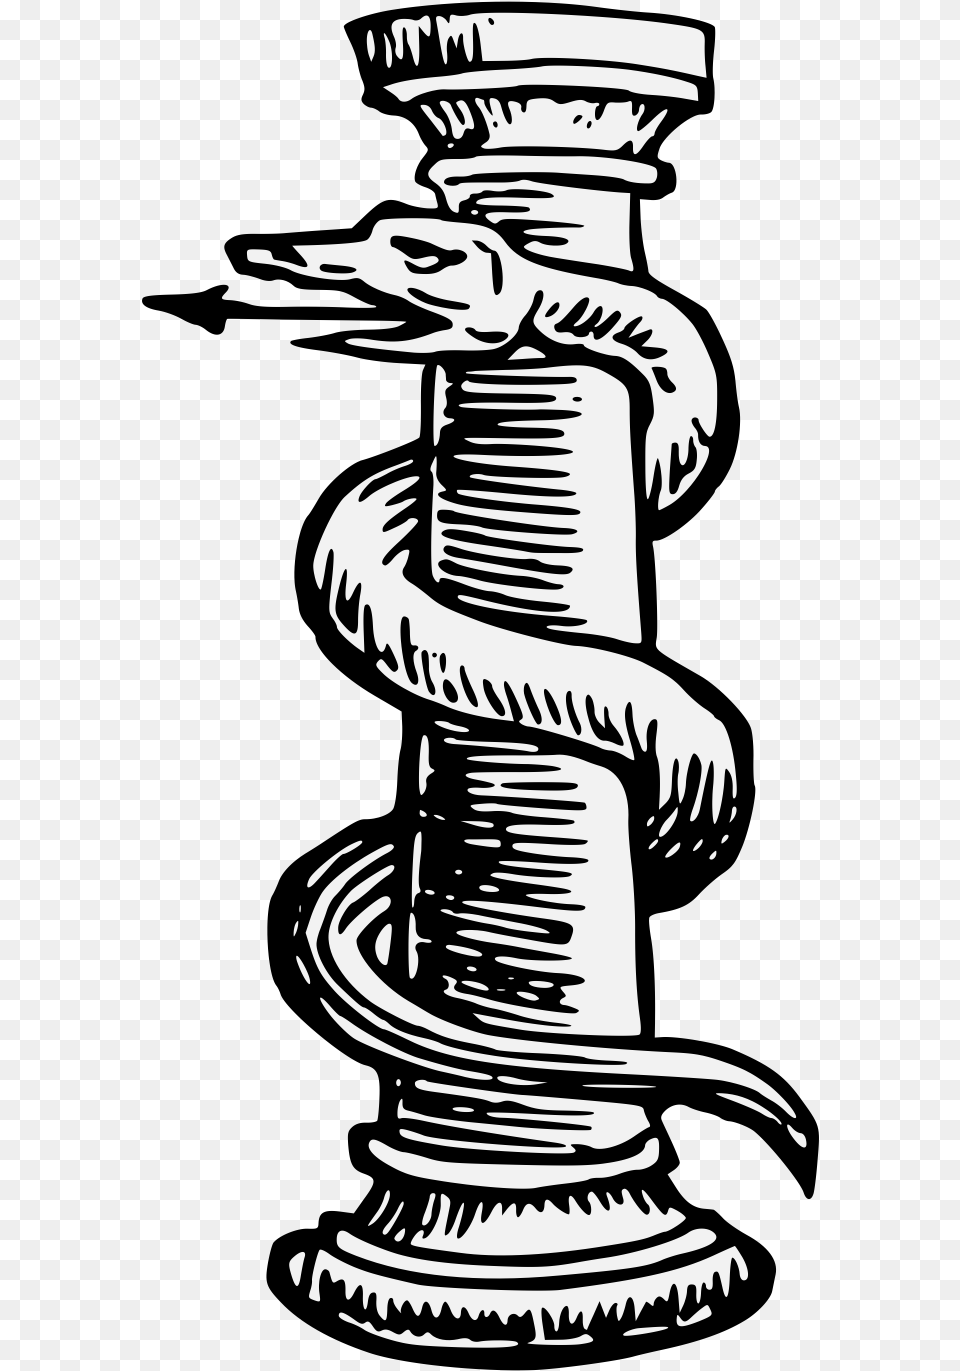 Details Snake Heraldry, Coil, Spiral, Animal, Dinosaur Png Image